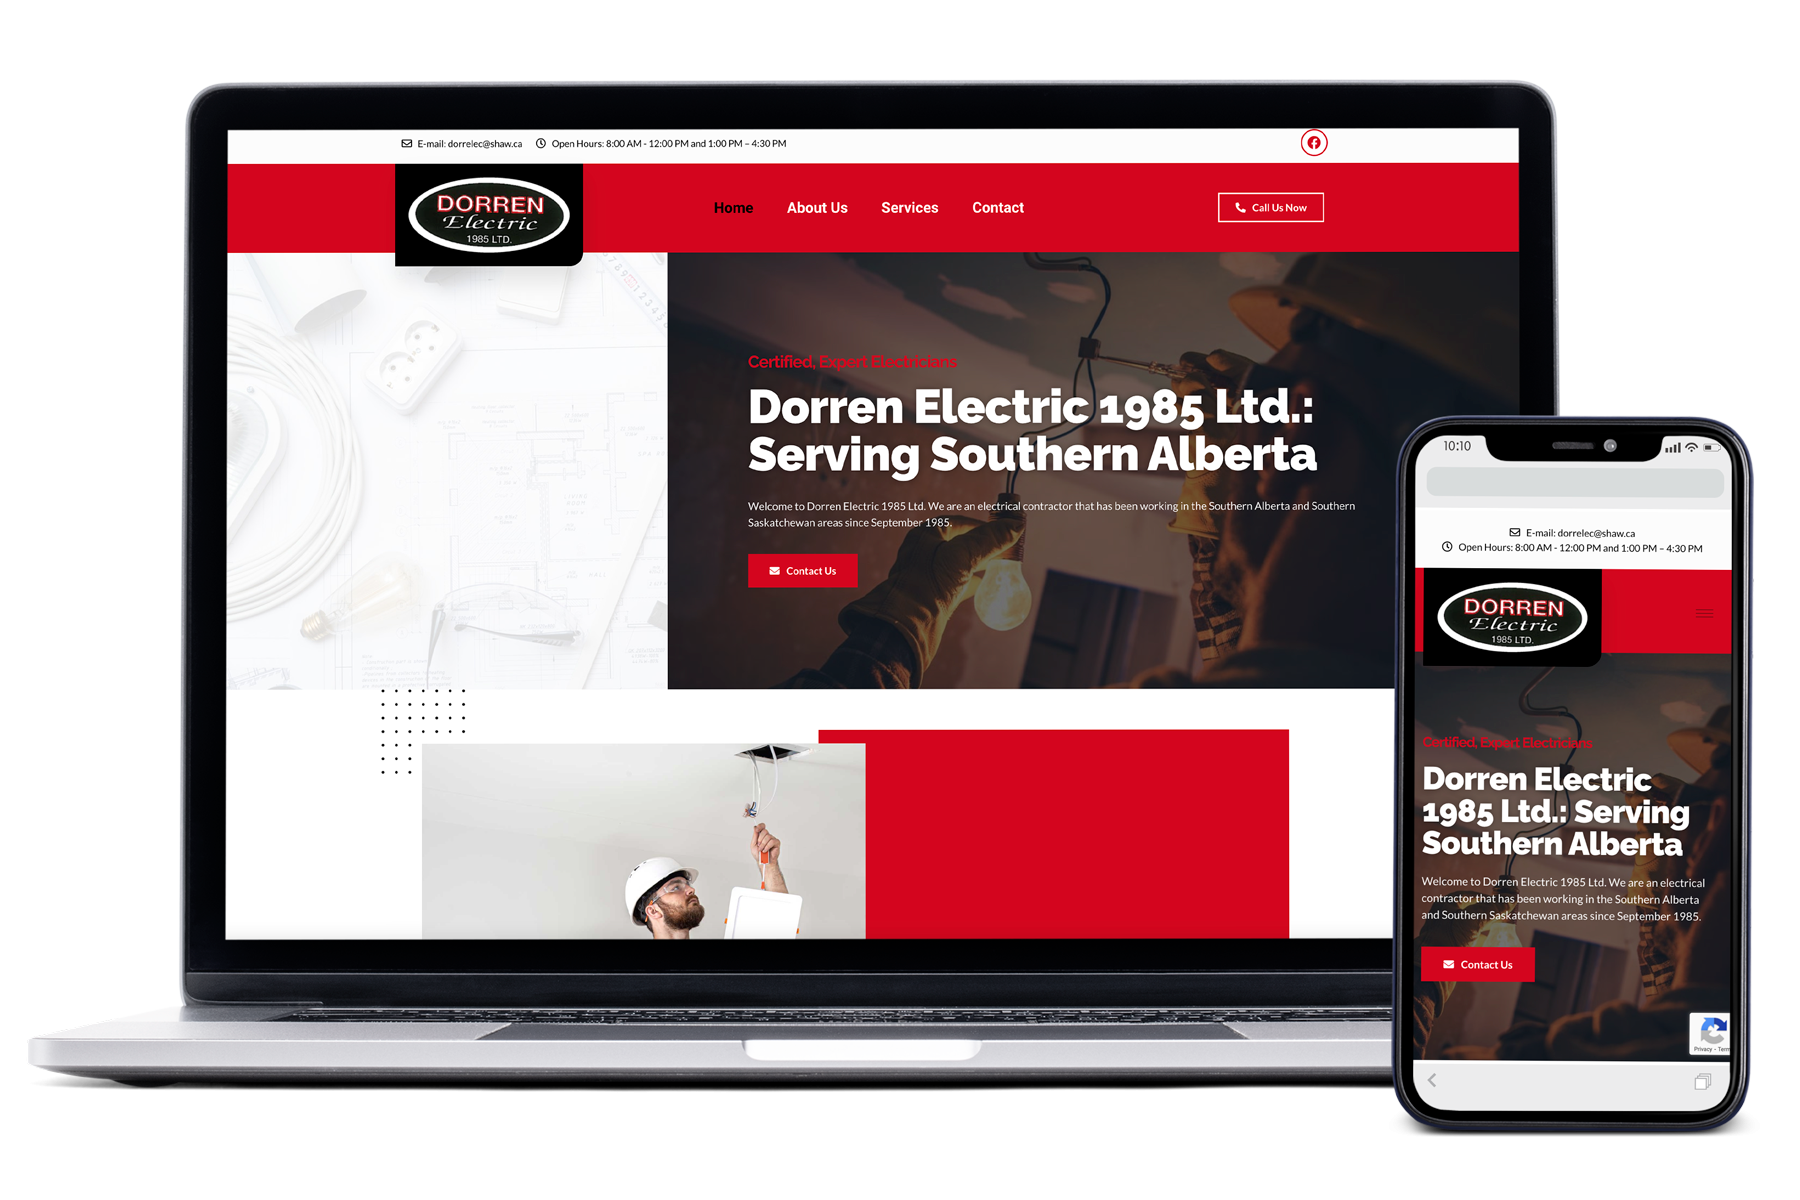 dorren electric LTD website design mockup on mobile and laptop